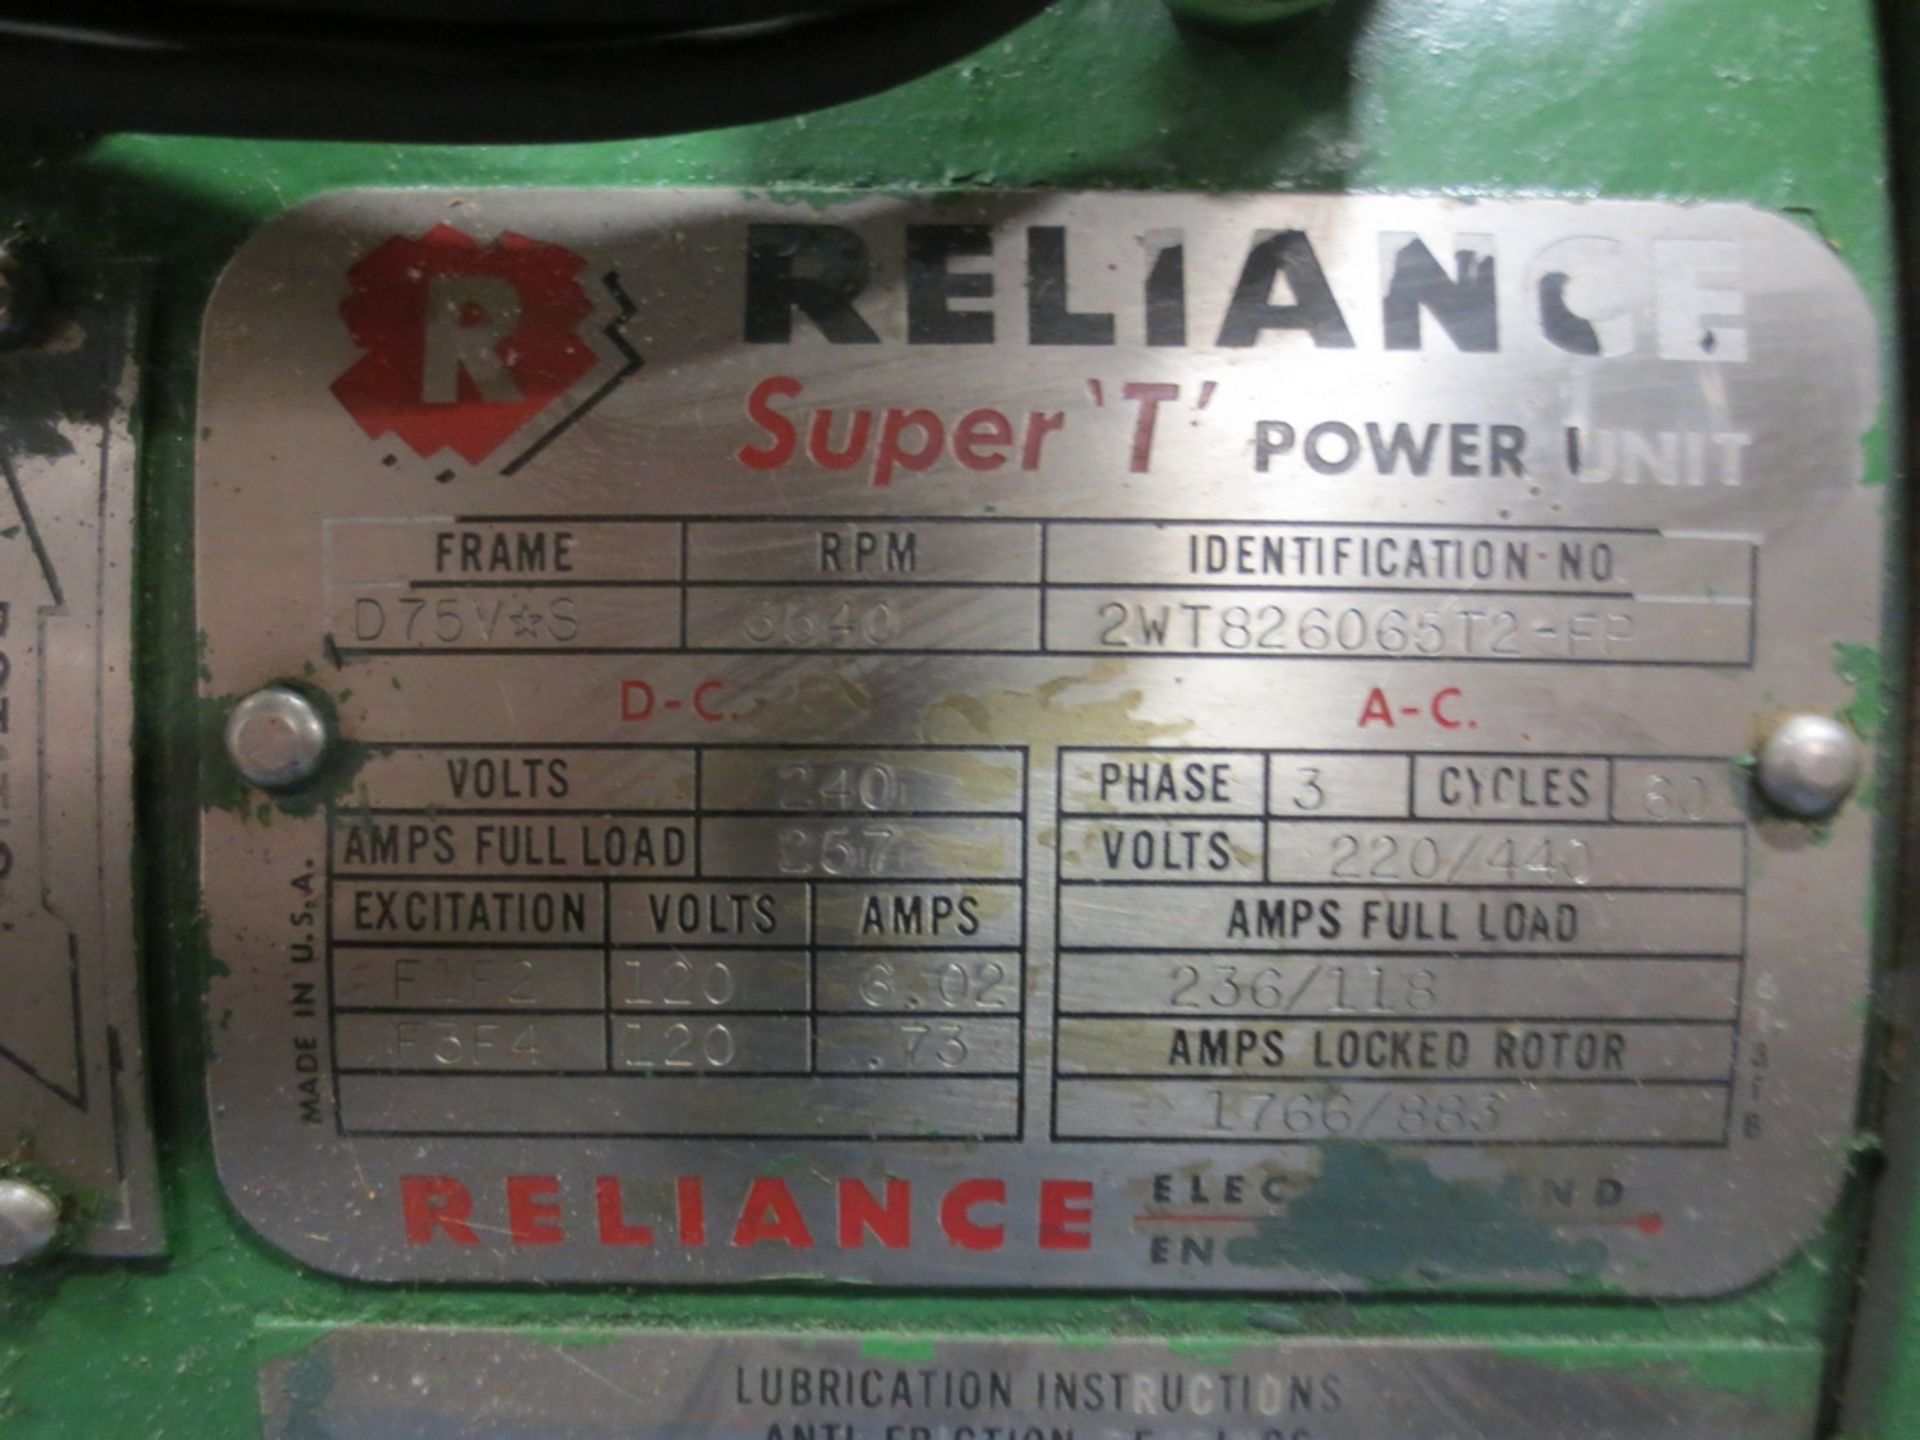 RELIANCE SUPER T POWER UNIT, 3PH, 220/440 VOLTS, S/N 2WT826065T2-FP - Image 3 of 3